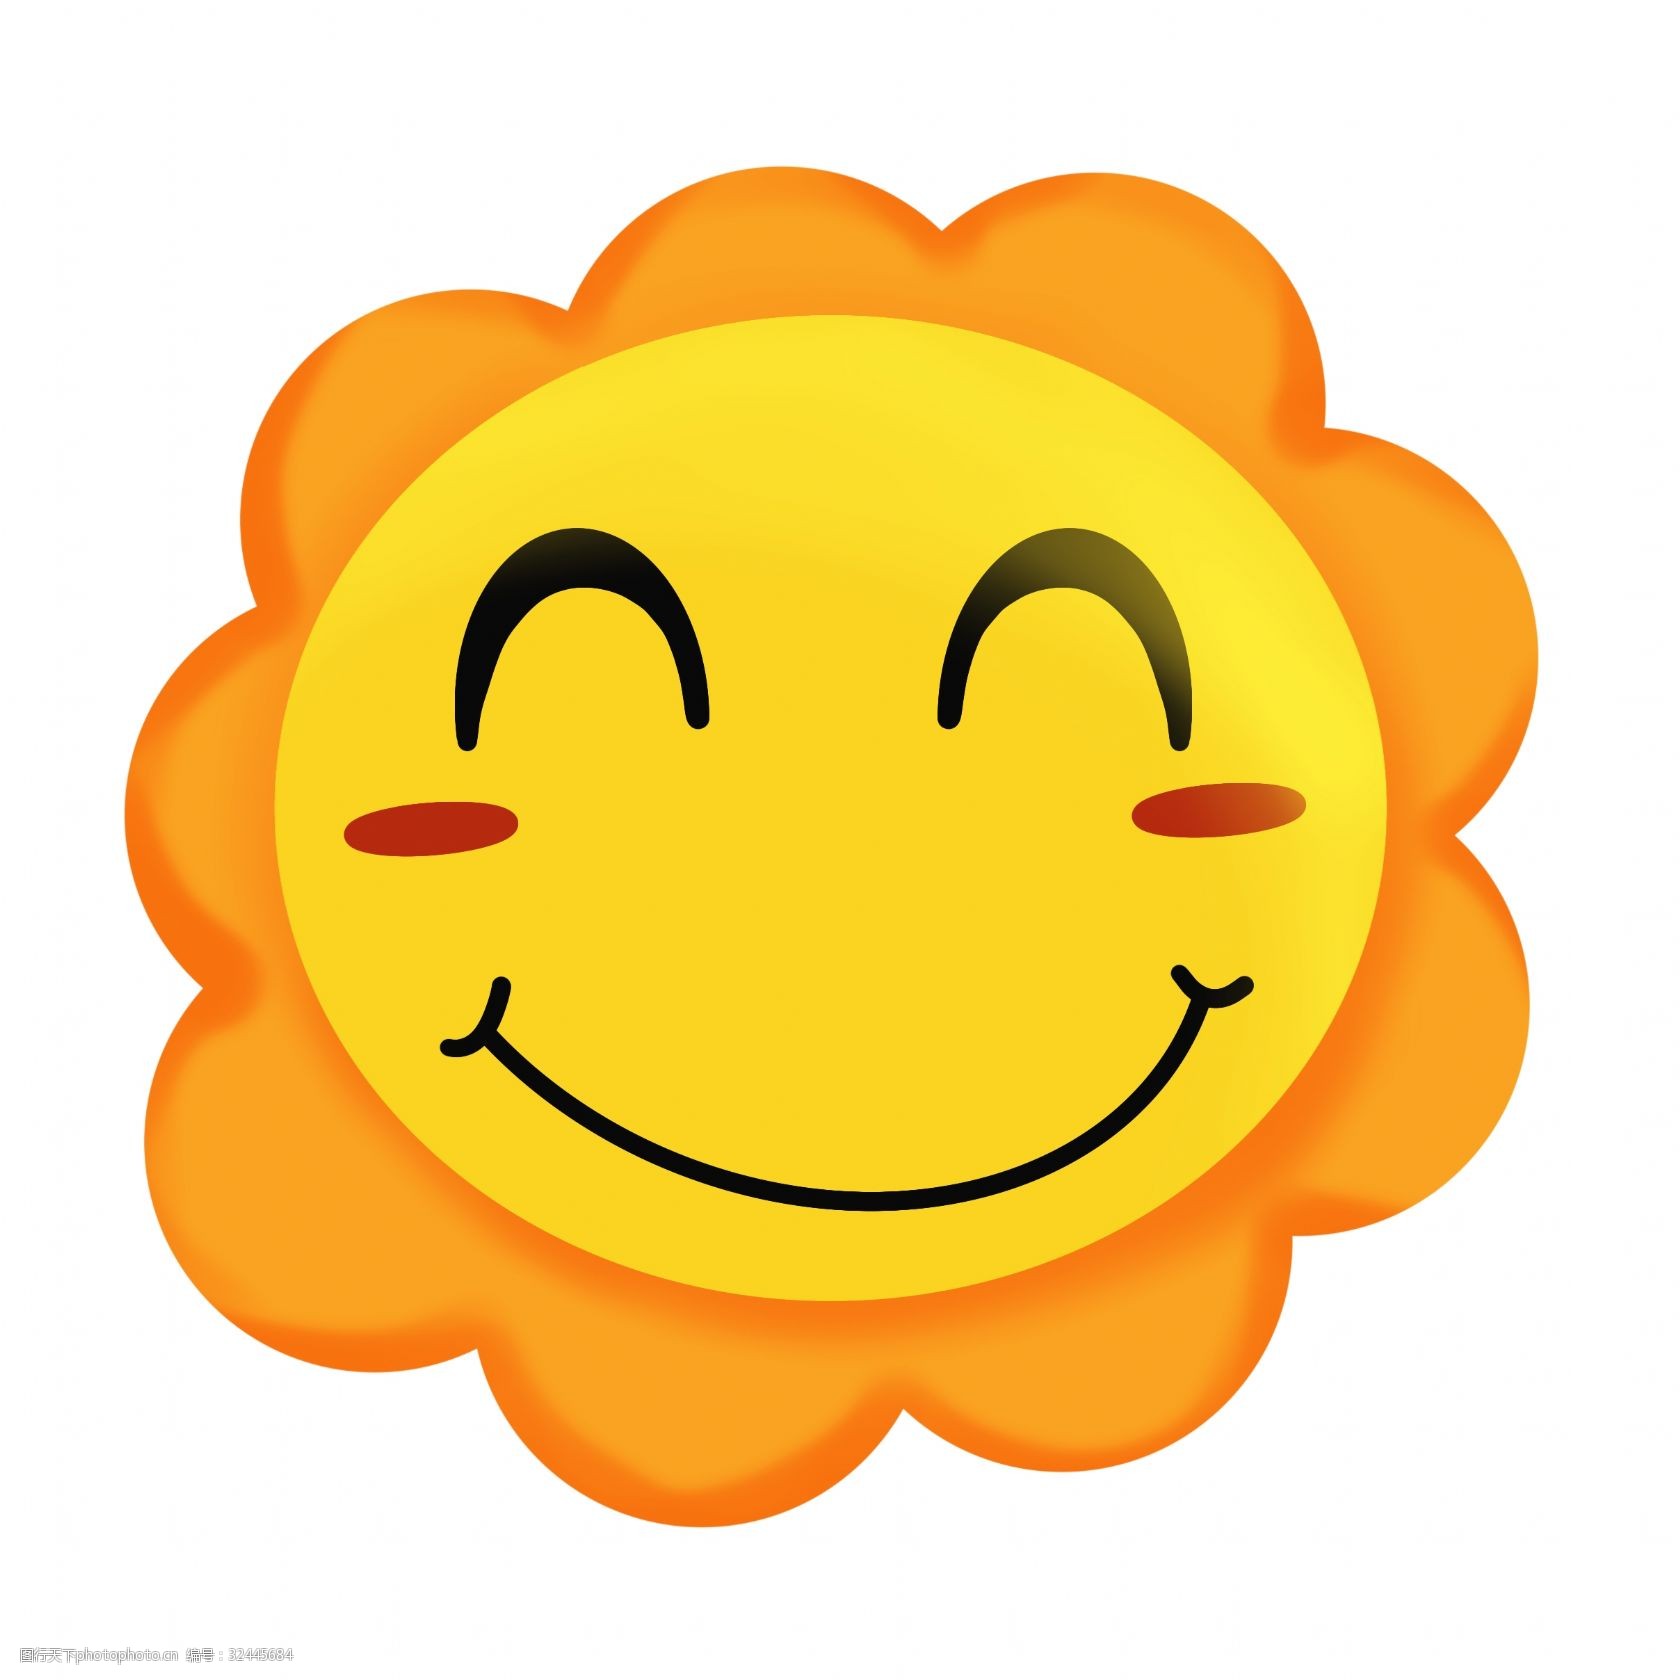 关键词:卡通笑脸太阳插画 卡通太阳 笑脸 太阳 插画 金色太阳 微笑的